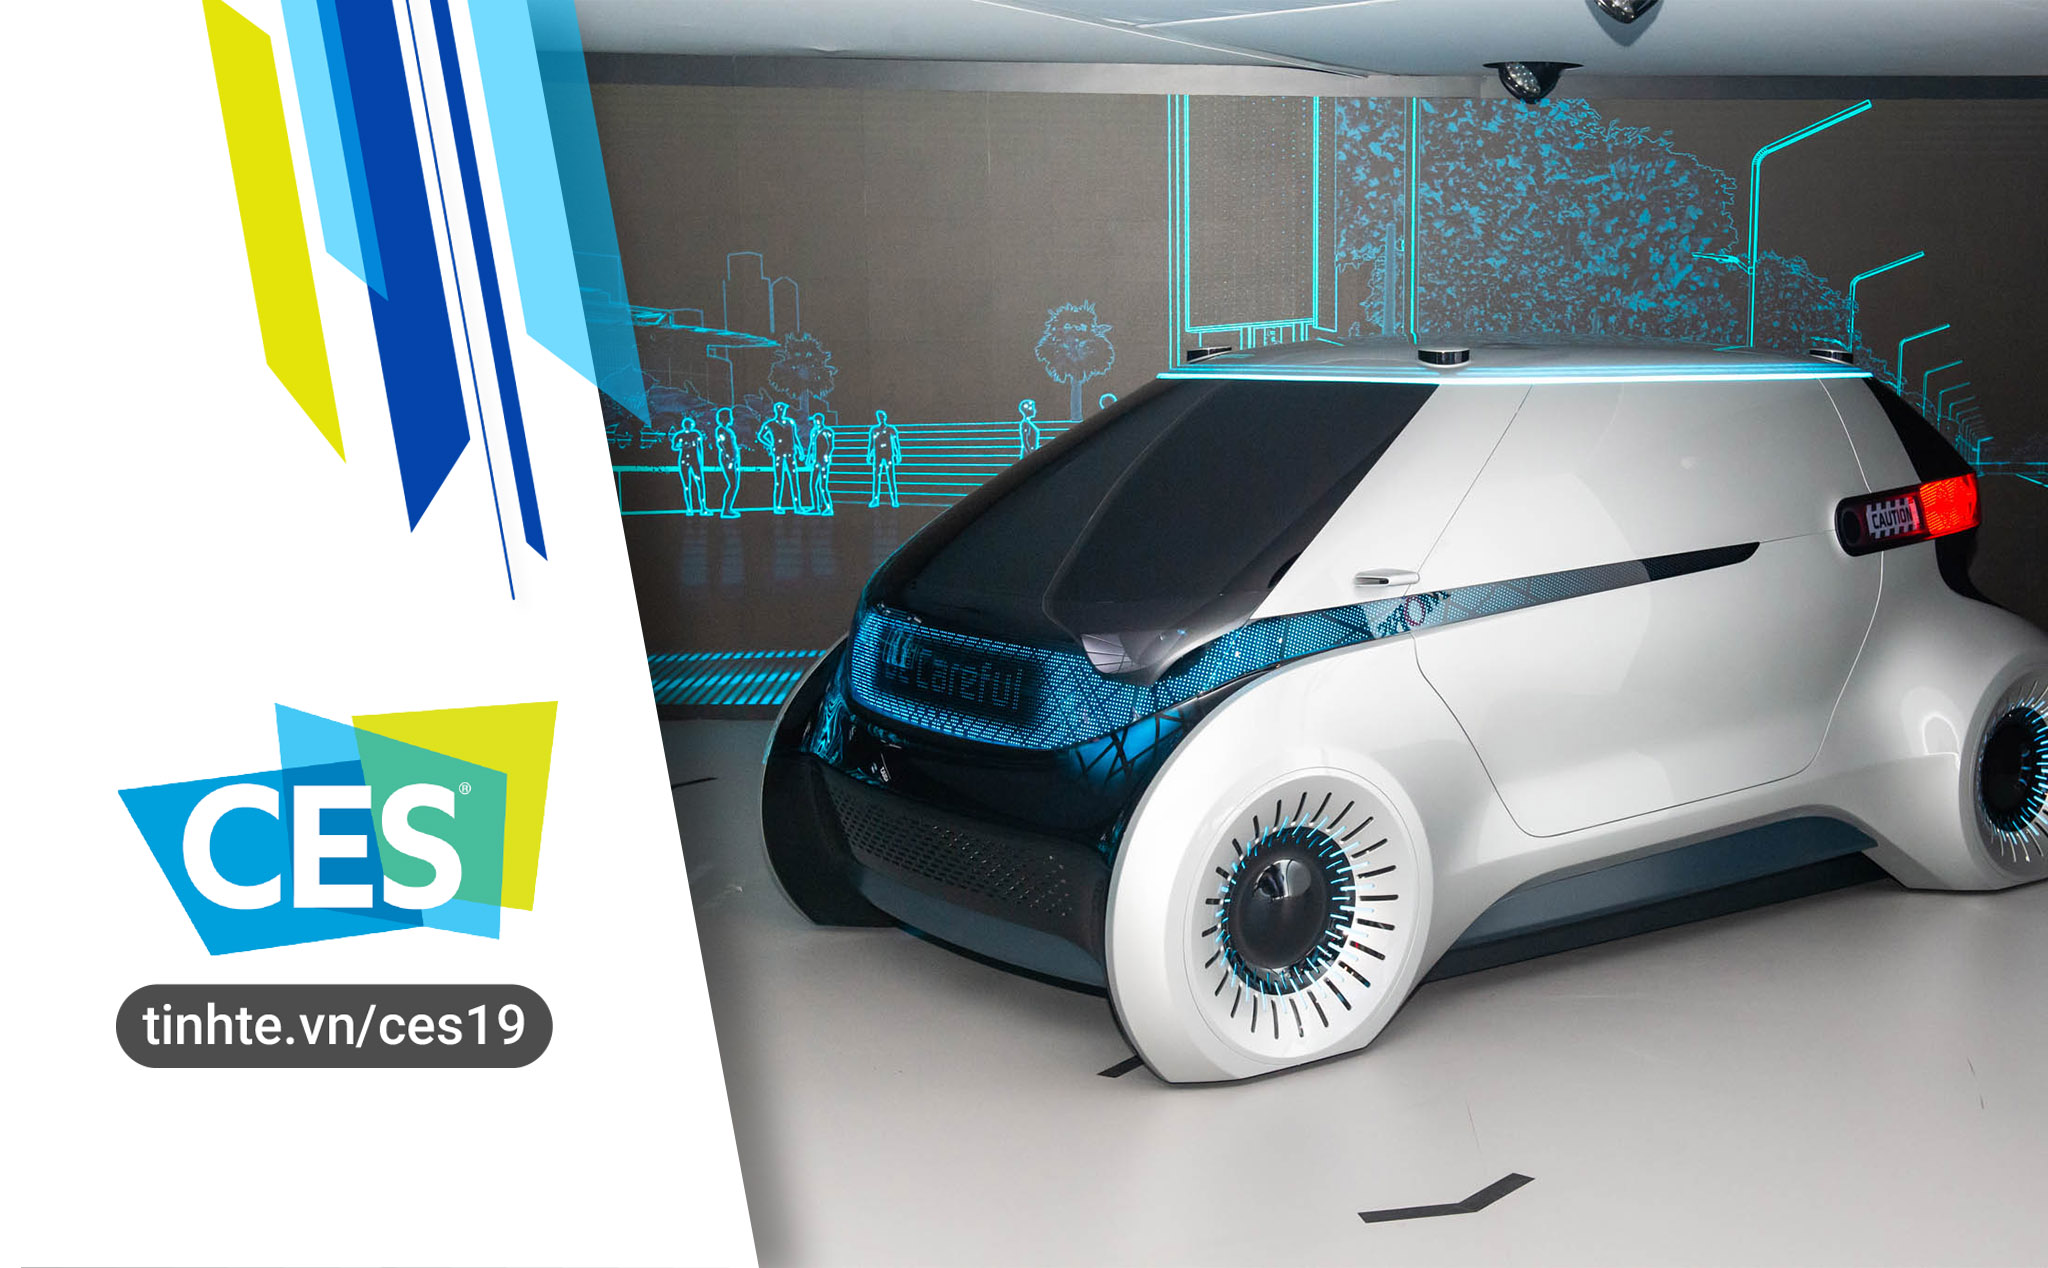 #CES19 "Trên tay" Hyundai Mobis Concept - trải nghiệm trước xe tự lái tương lai của Hyundai